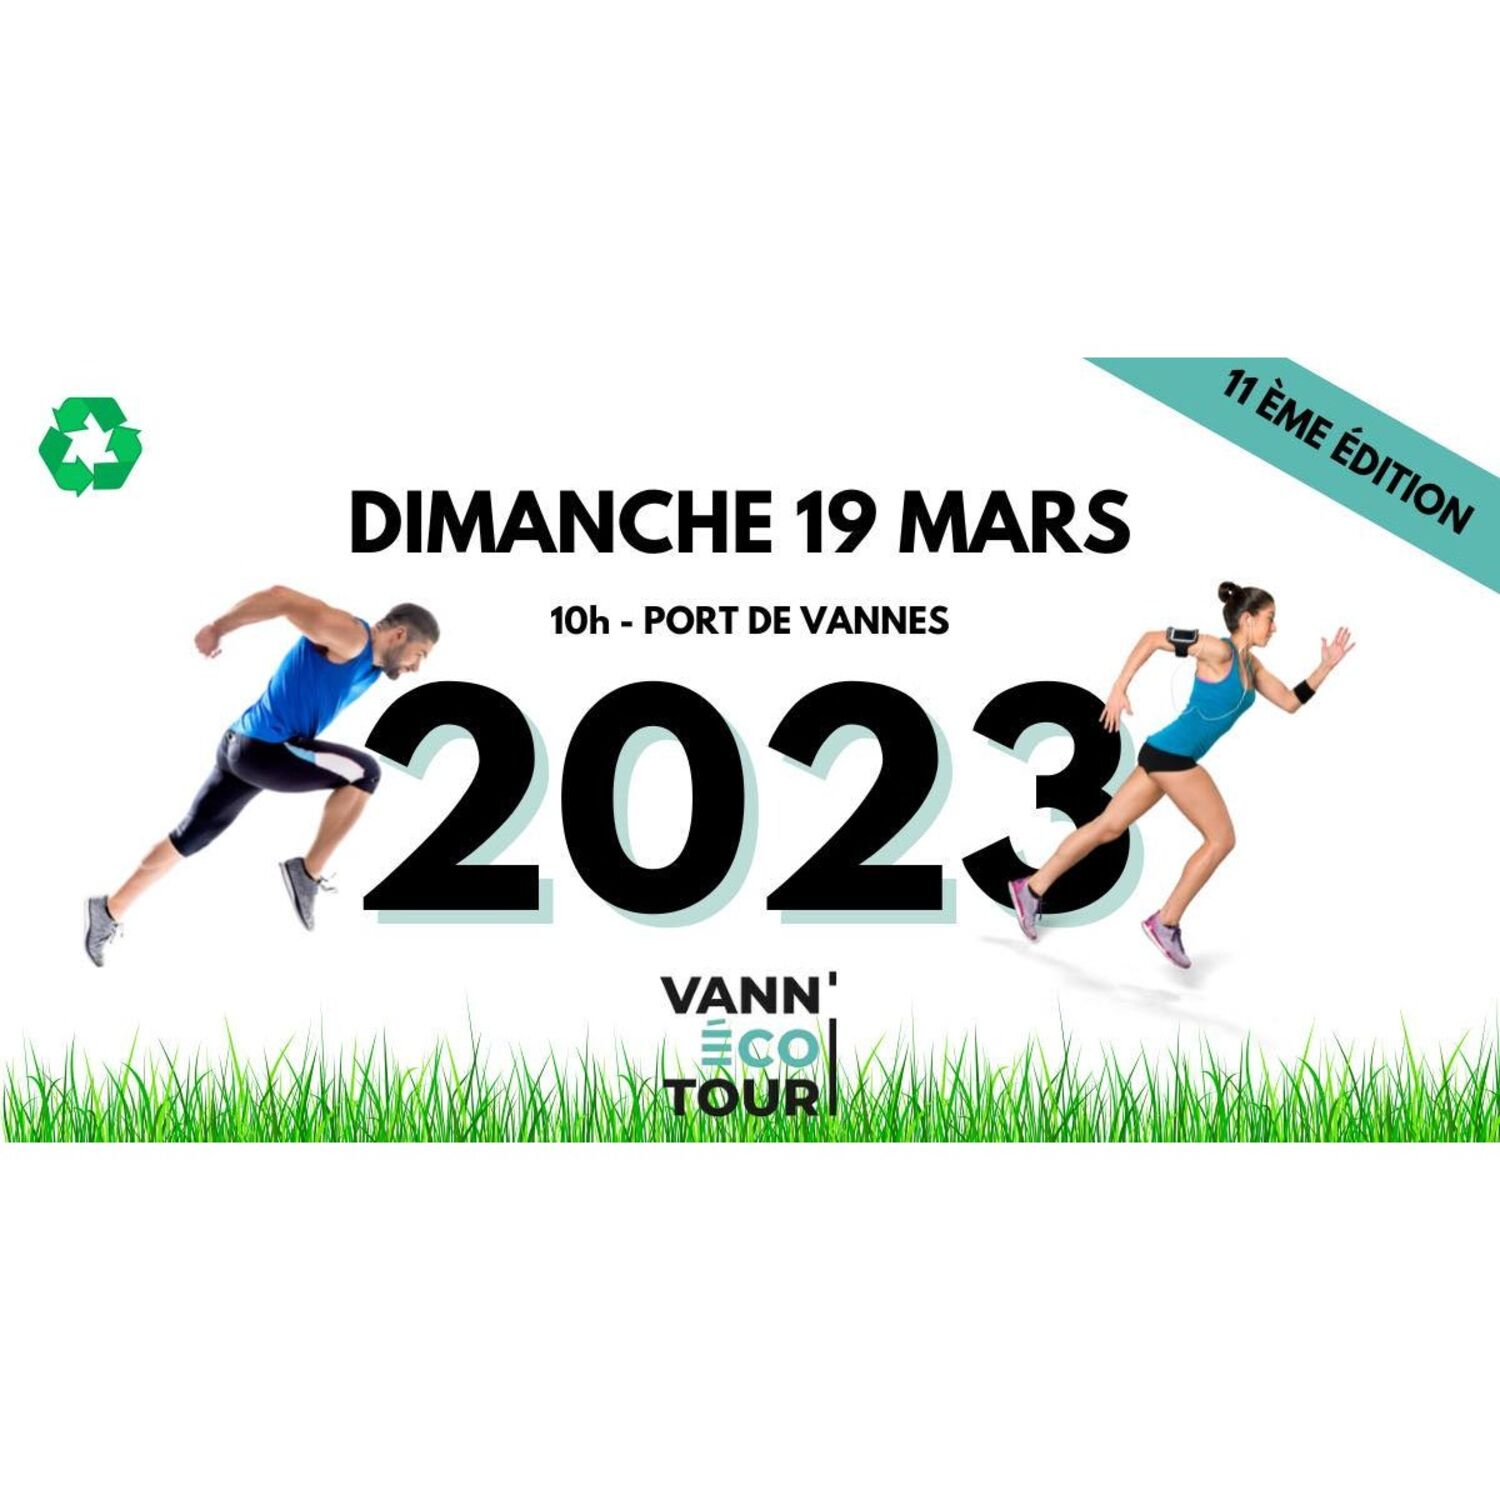 VANN' ÉCO TOUR 2023